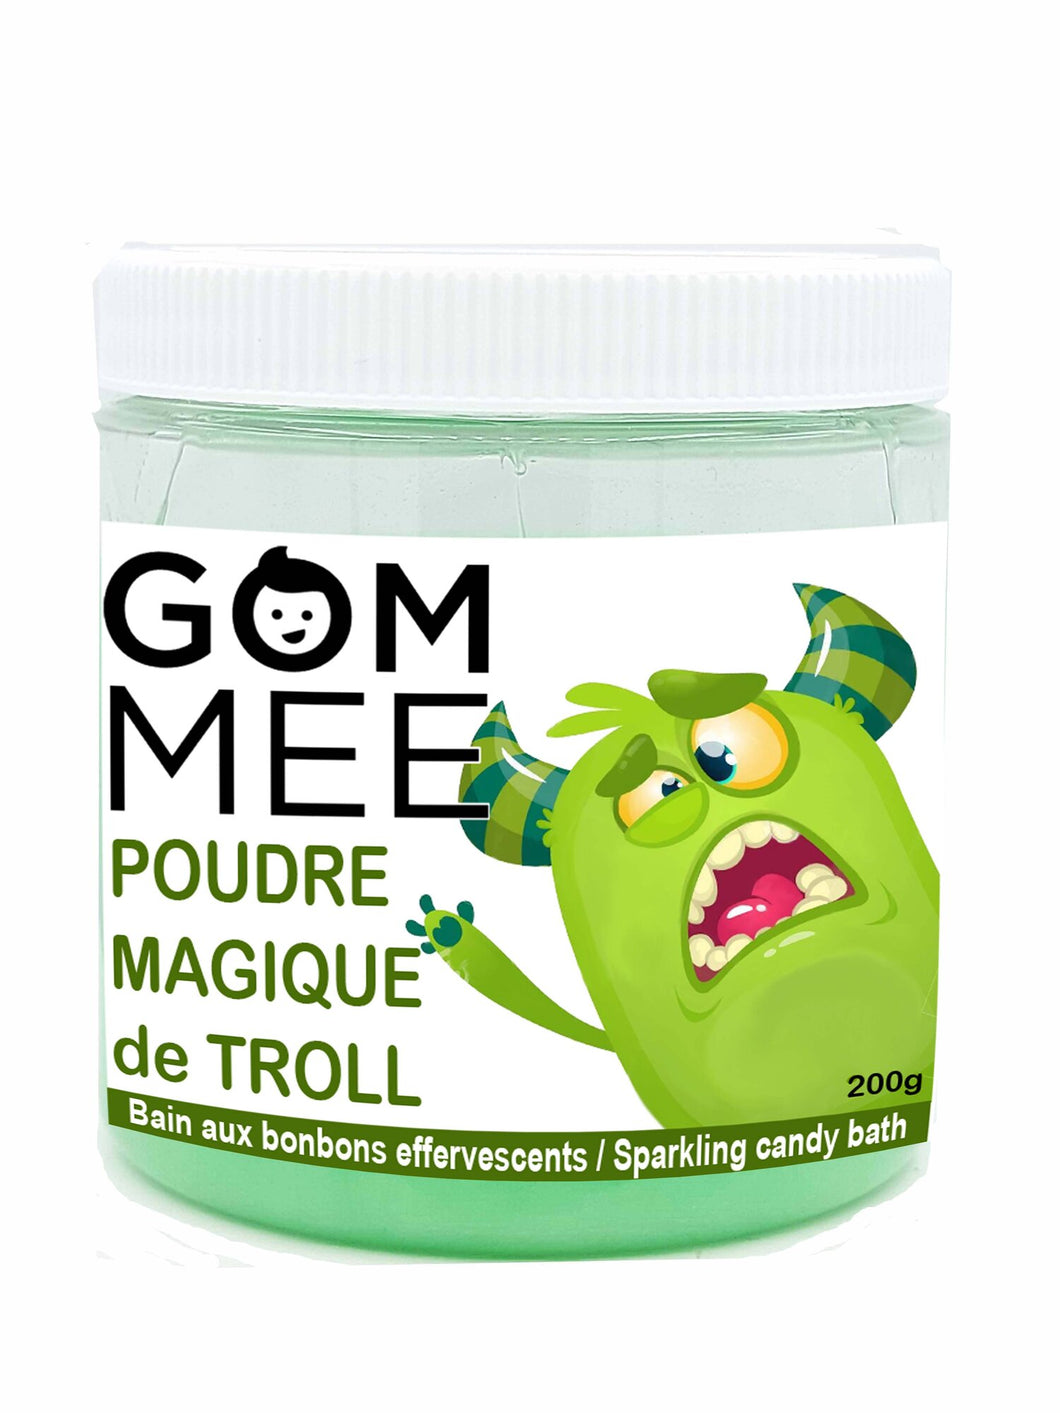 Poudre magique - GOM-MEE